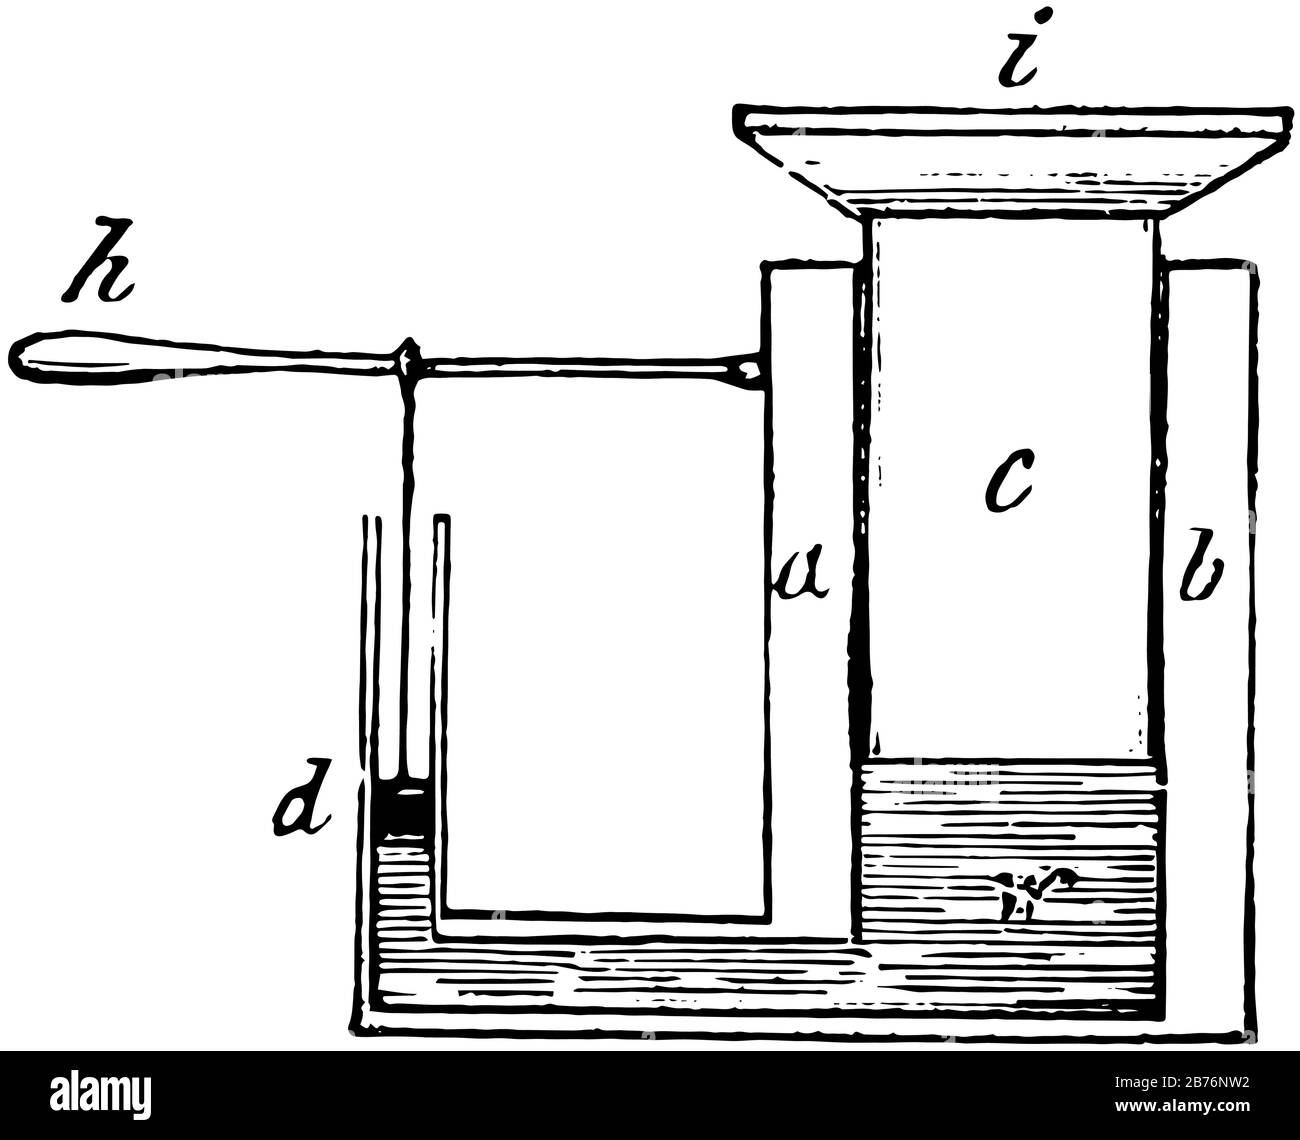 Esta ilustración representa la prensa hidráulica, que es un dispositivo que  utiliza un cilindro hidráulico para generar una fuerza de compresión, un  dibujo de línea vintage o un motor de compresión Imagen